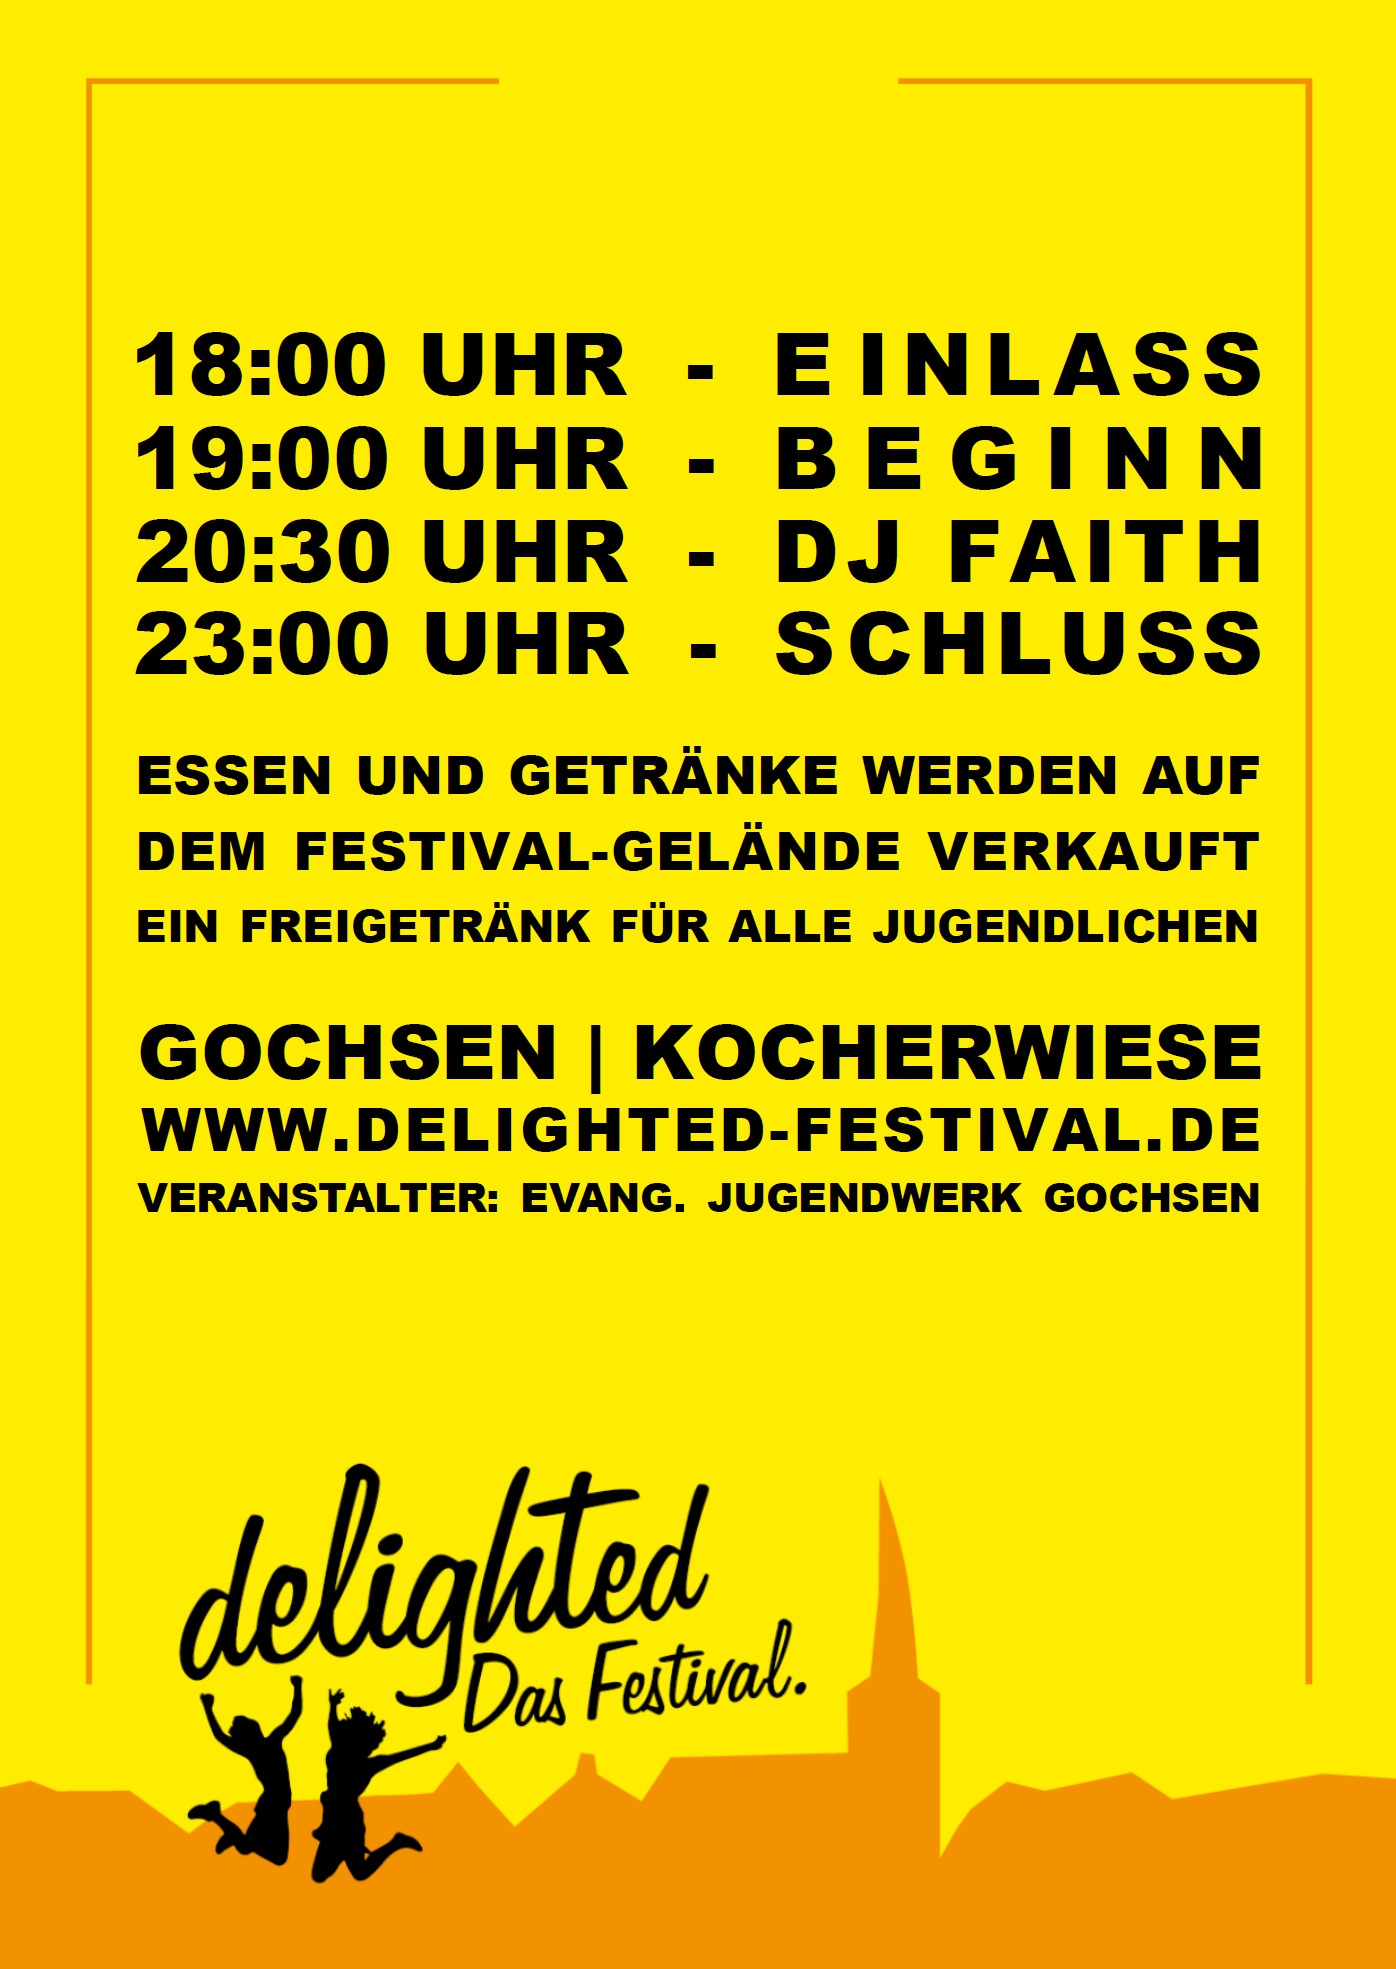 delighted - Das Festival.